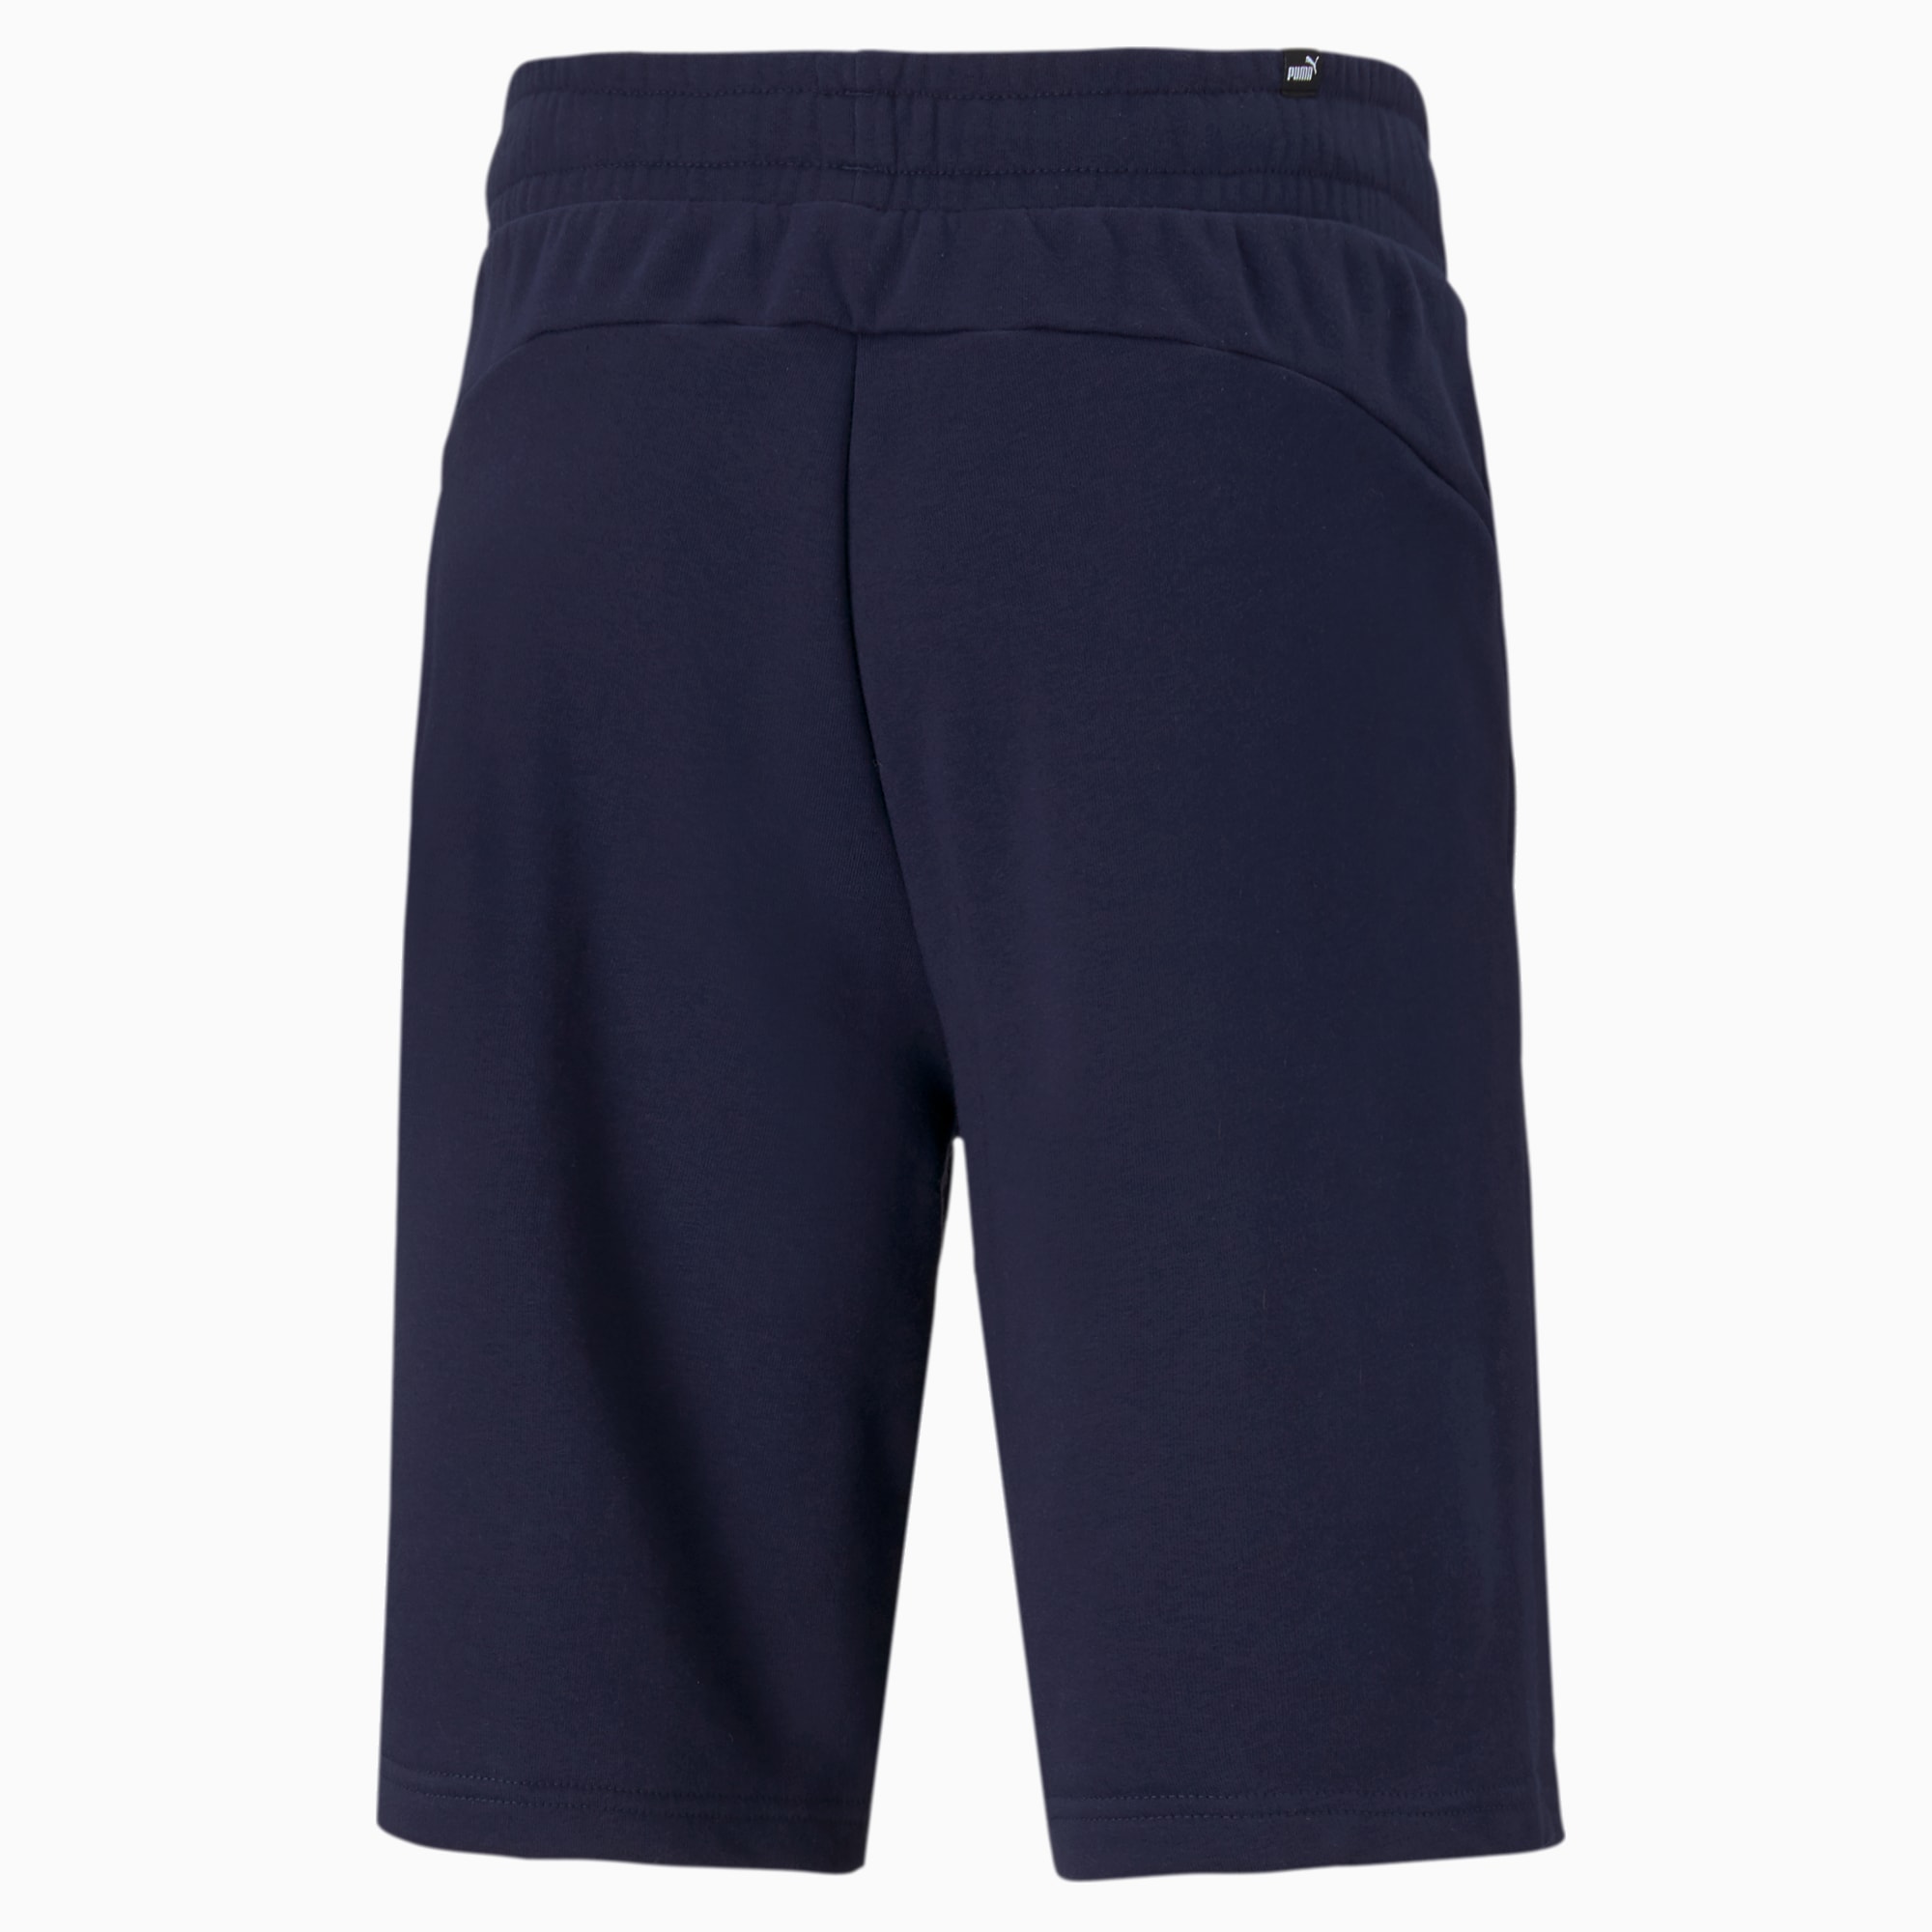 PUMA Essentials Men's Shorts, Peacoat, Size XS, Clothing